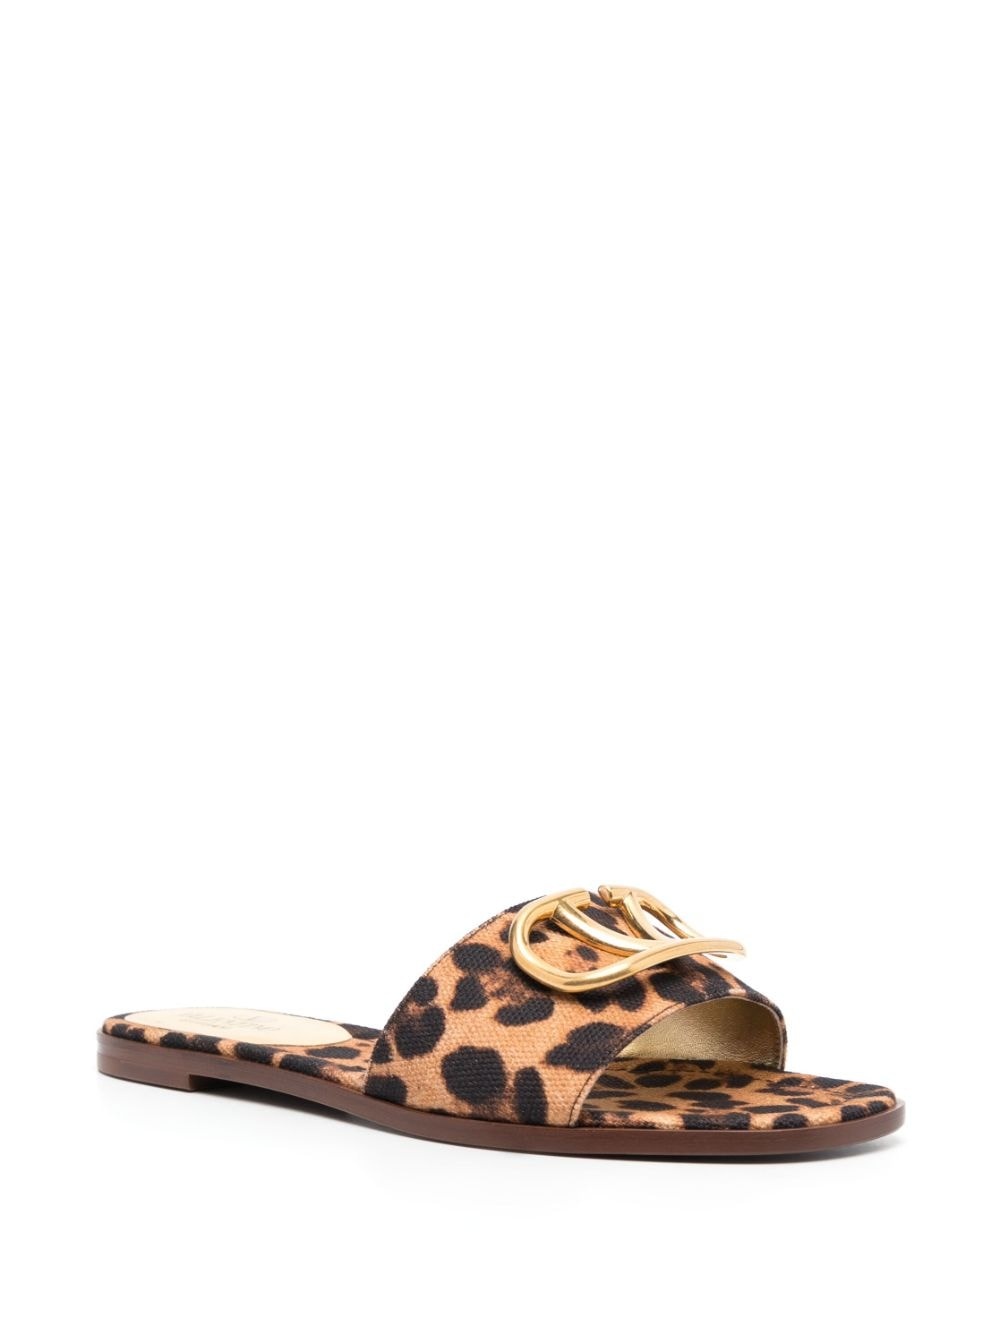 leopard-print buckle sandals - 2